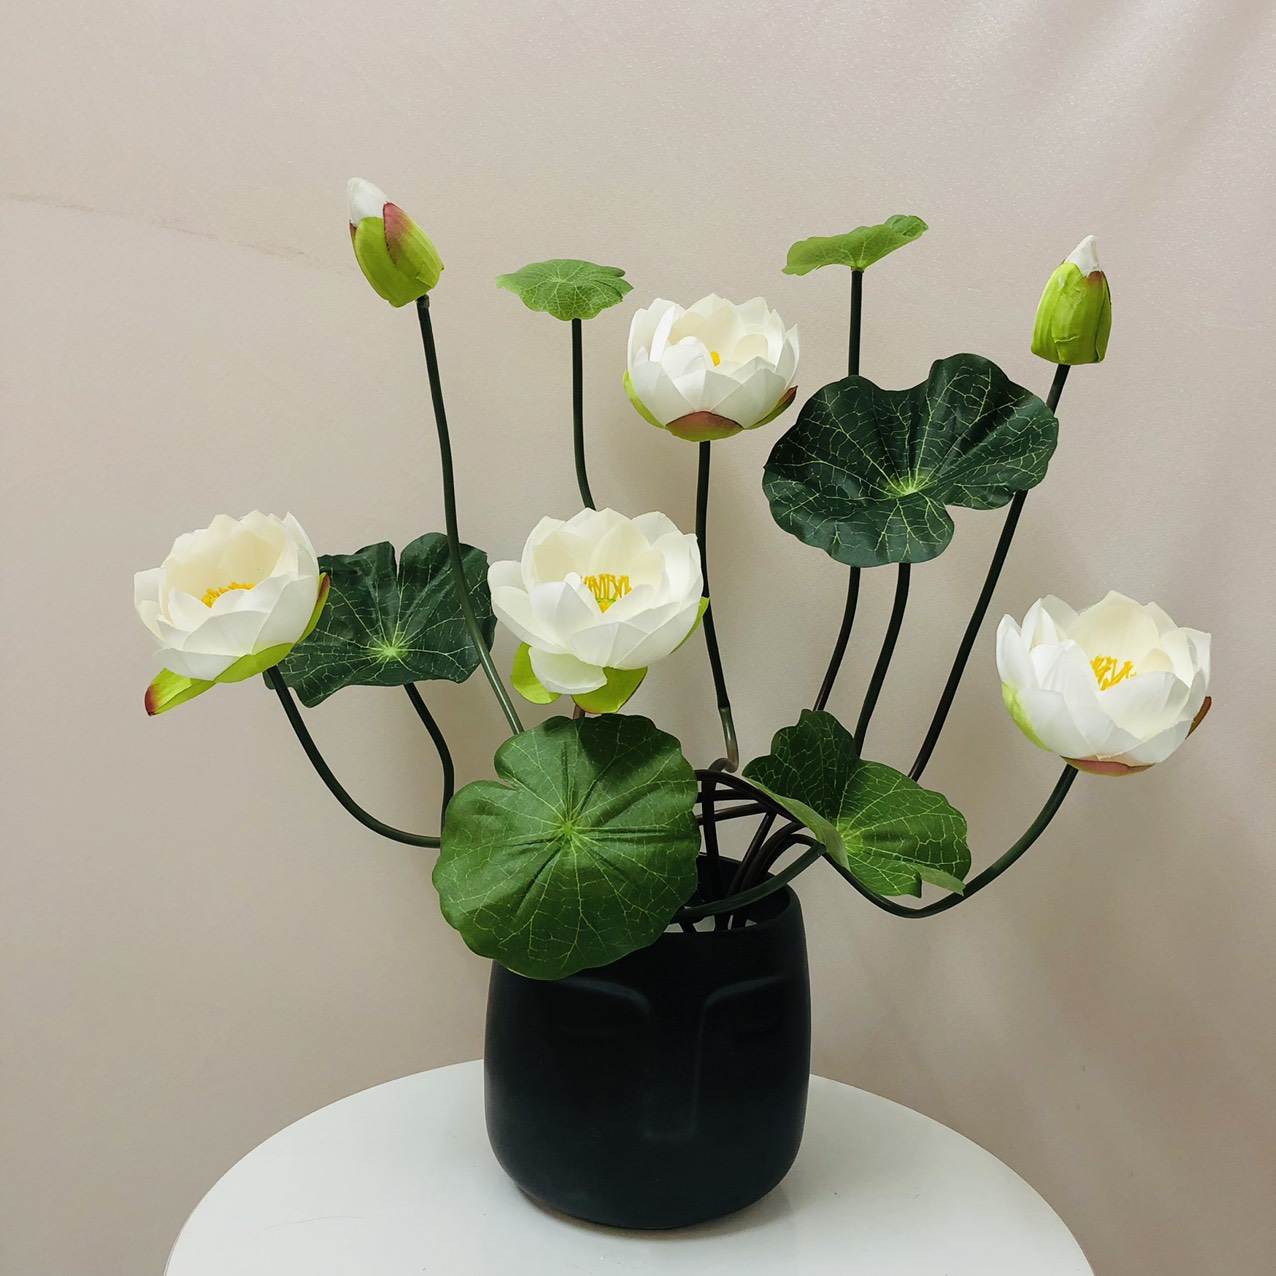 Hoa lụa, Bó hoa sen giả kèm nụ và lá sen dùng để trang trí nhà cửa, văn phòng, nhà hàng, trưng bày ở ban thờ gia tiên, ban thờ phật (chưa gồm bình gốm sứ)